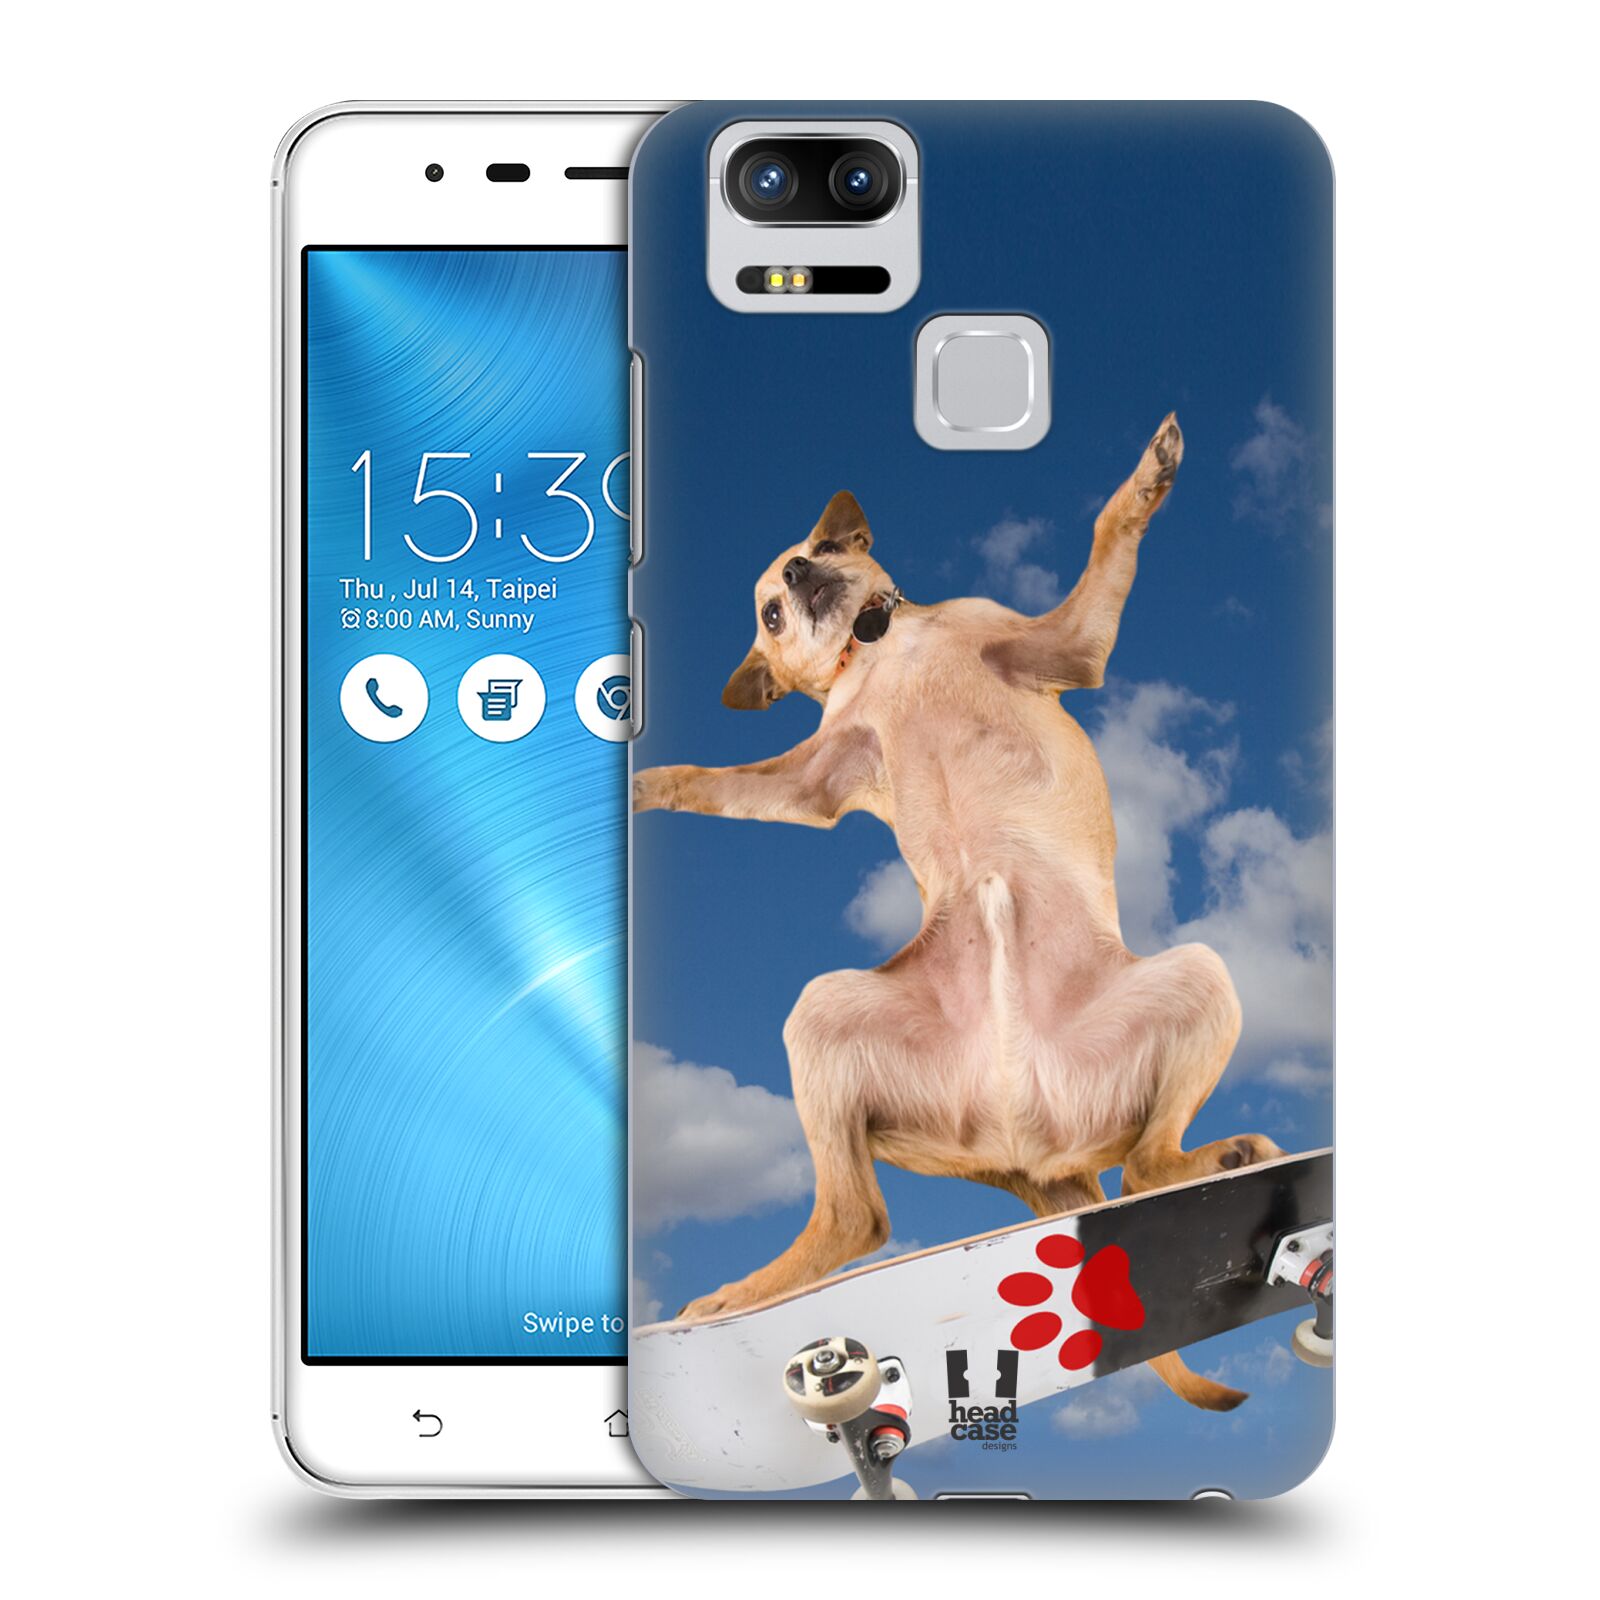 HEAD CASE plastový obal na mobil Asus Zenfone 3 Zoom ZE553KL vzor Legrační zvířátka pejsek skateboard